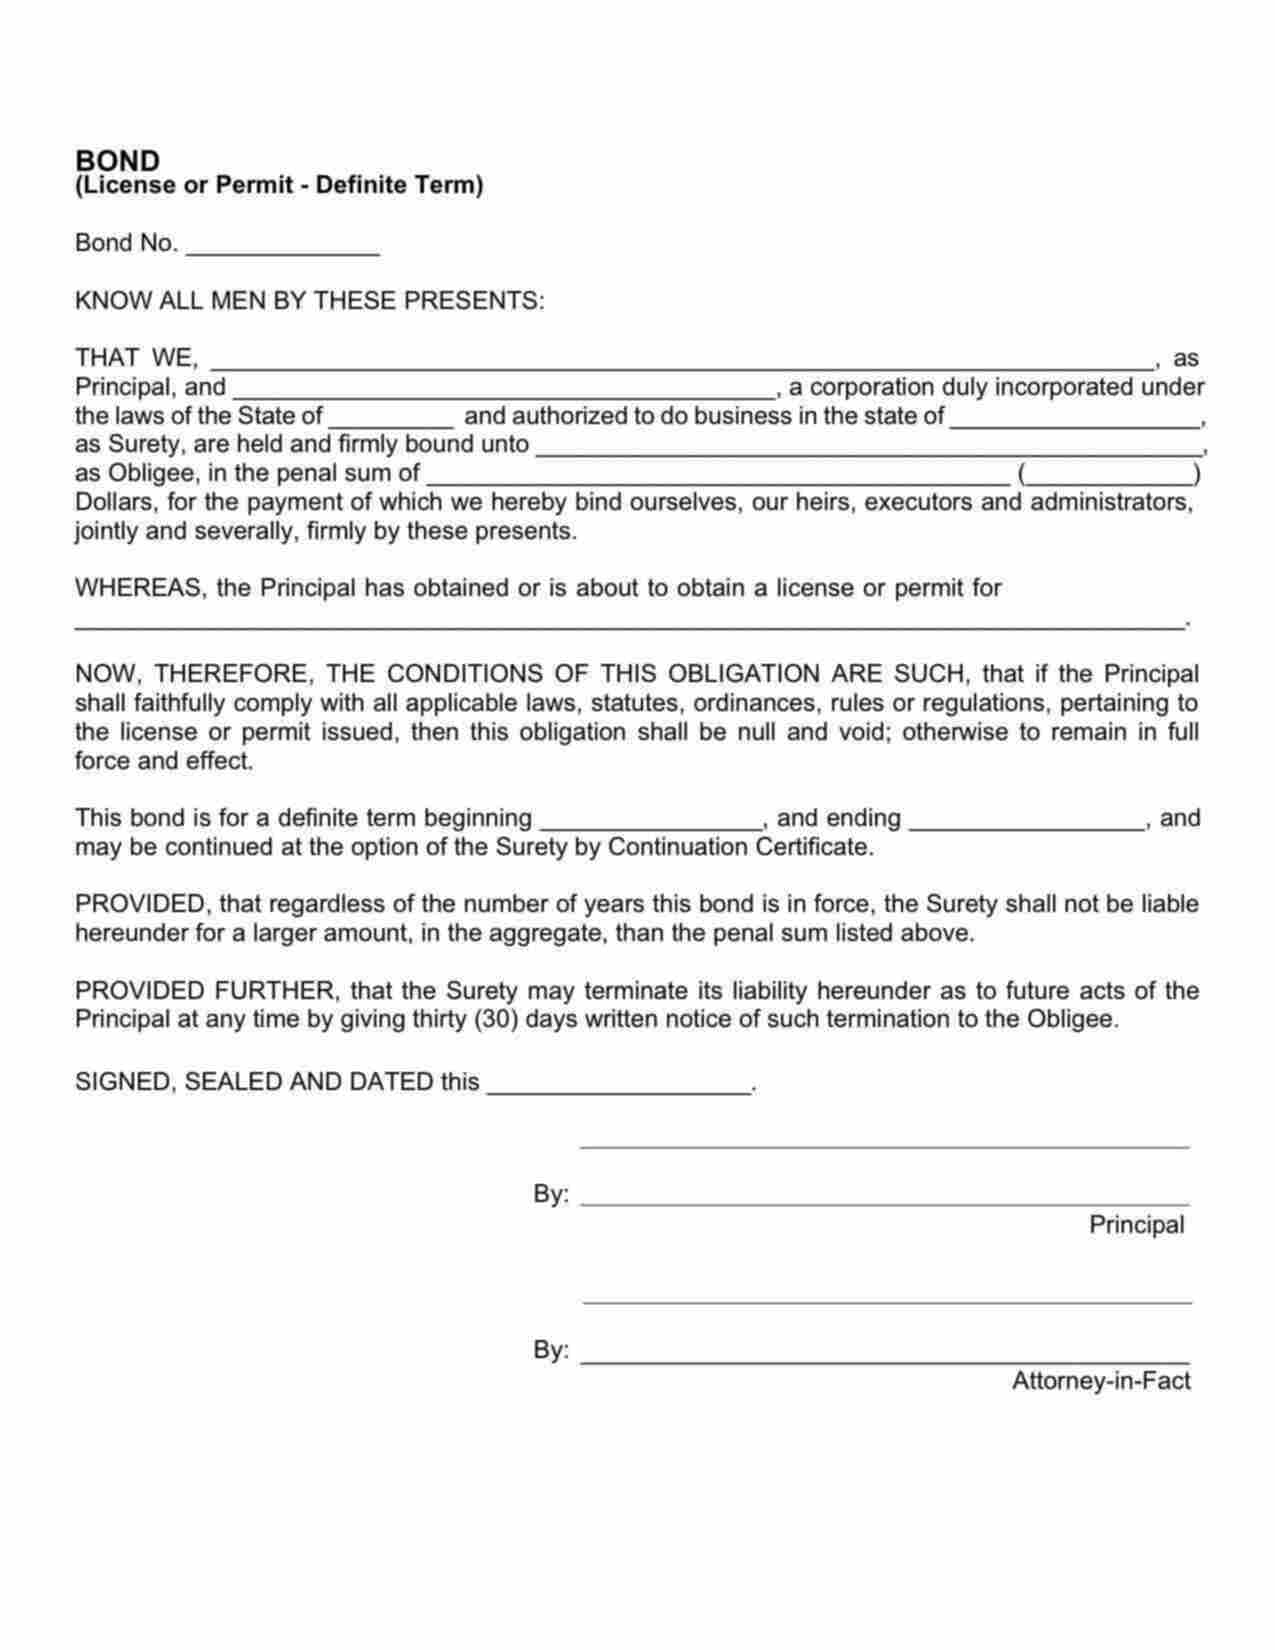 Wisconsin License/Permit Bond Form